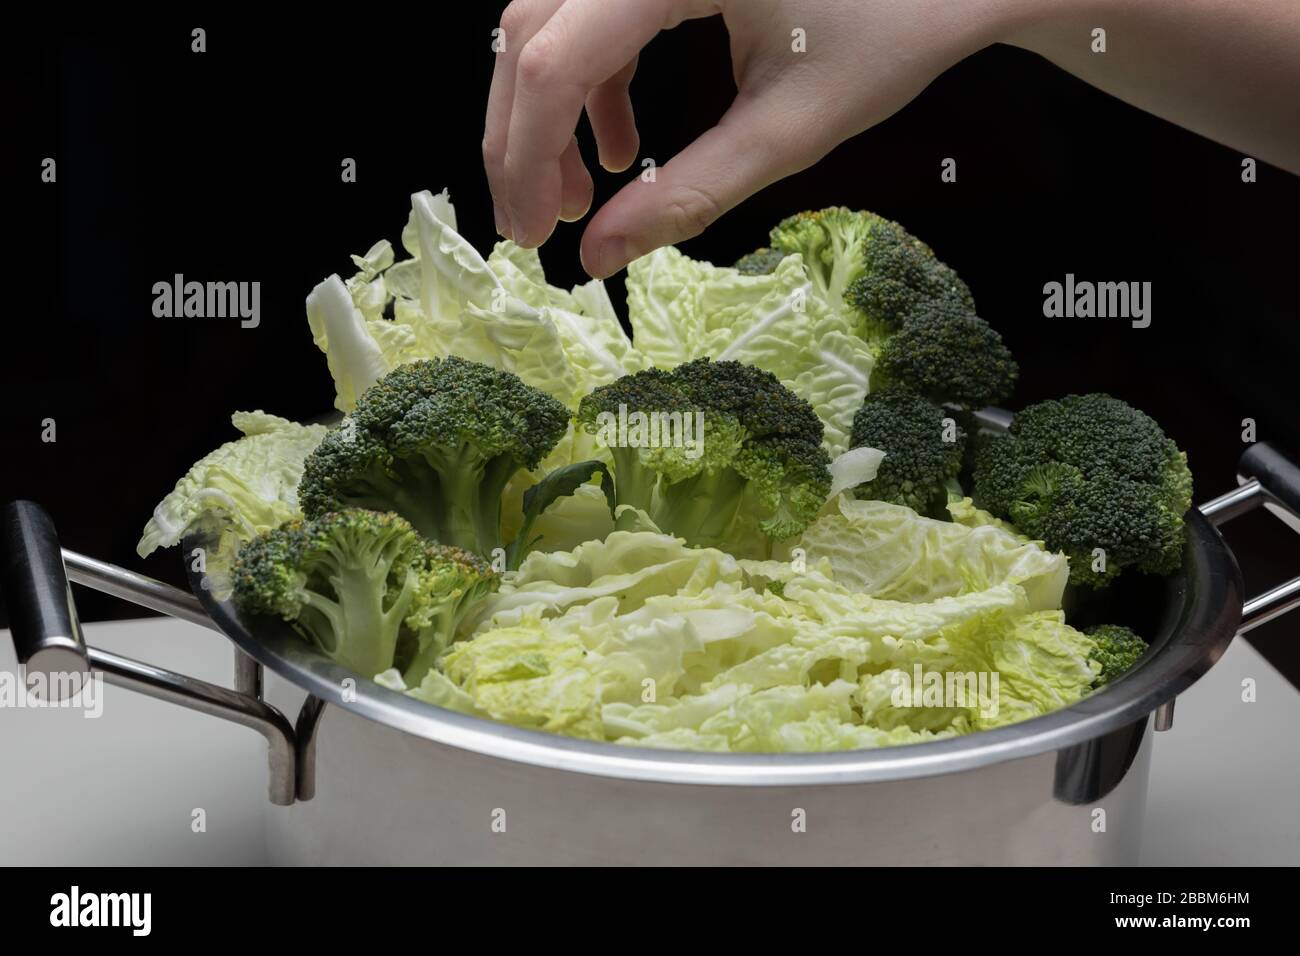 Frauen Hände halten Brokkoli und machen Low-Carb-Diät-Mahlzeit. Junge Hausfrau, die Rohkost vorbereitet. Stockfoto